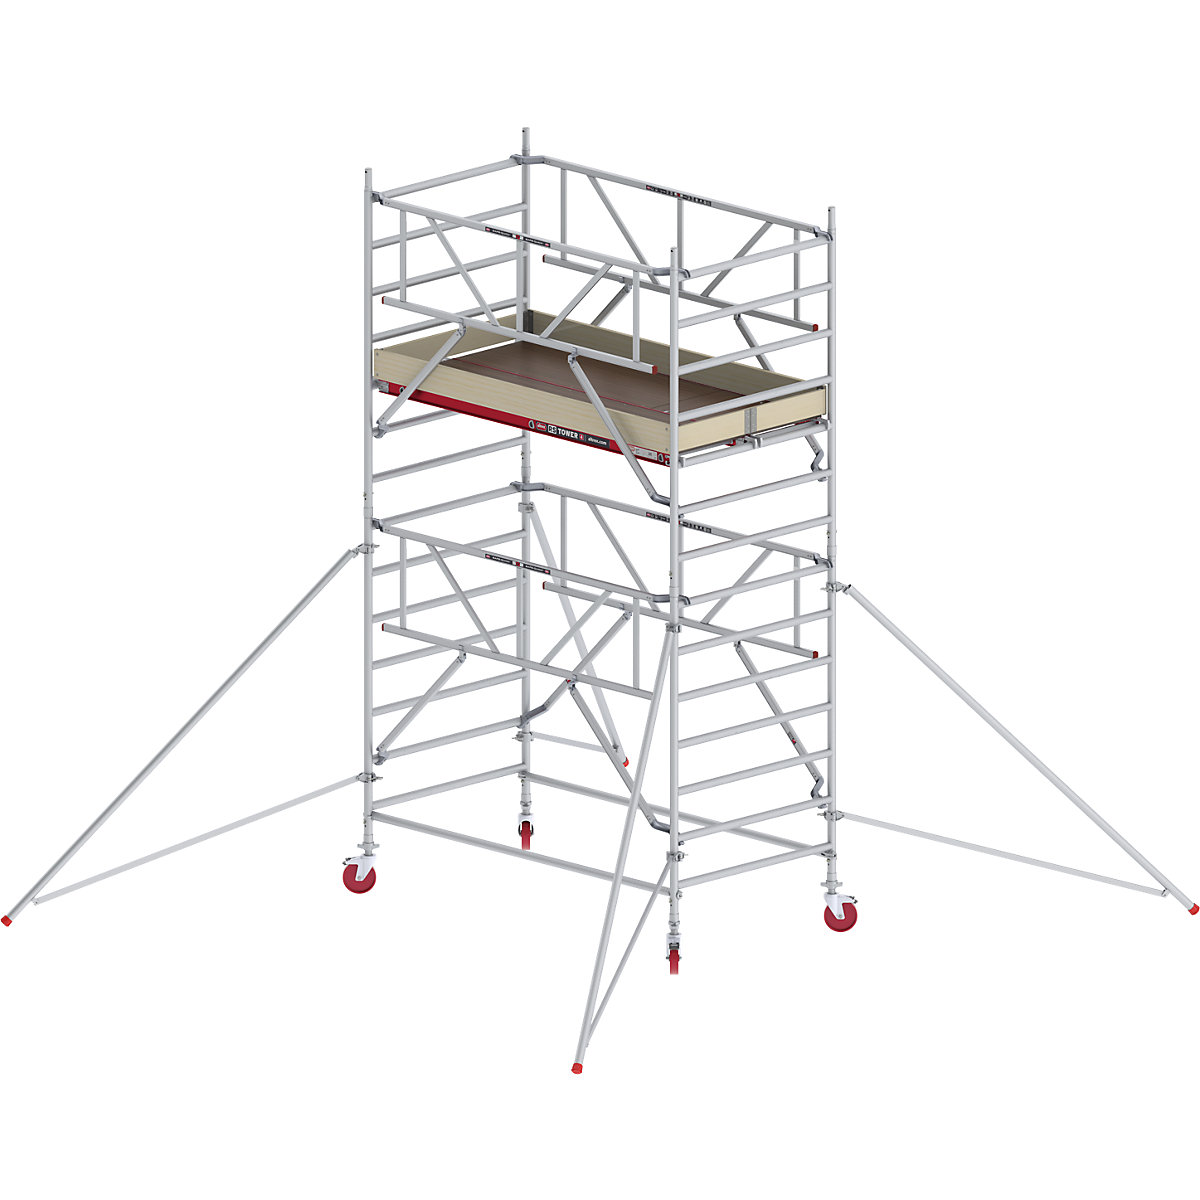 Andaime móvel largo RS TOWER 42 com Safe-Quick® – Altrex, plataforma de madeira, comprimento 2,45 m, altura de trabalho 5,20 m-11